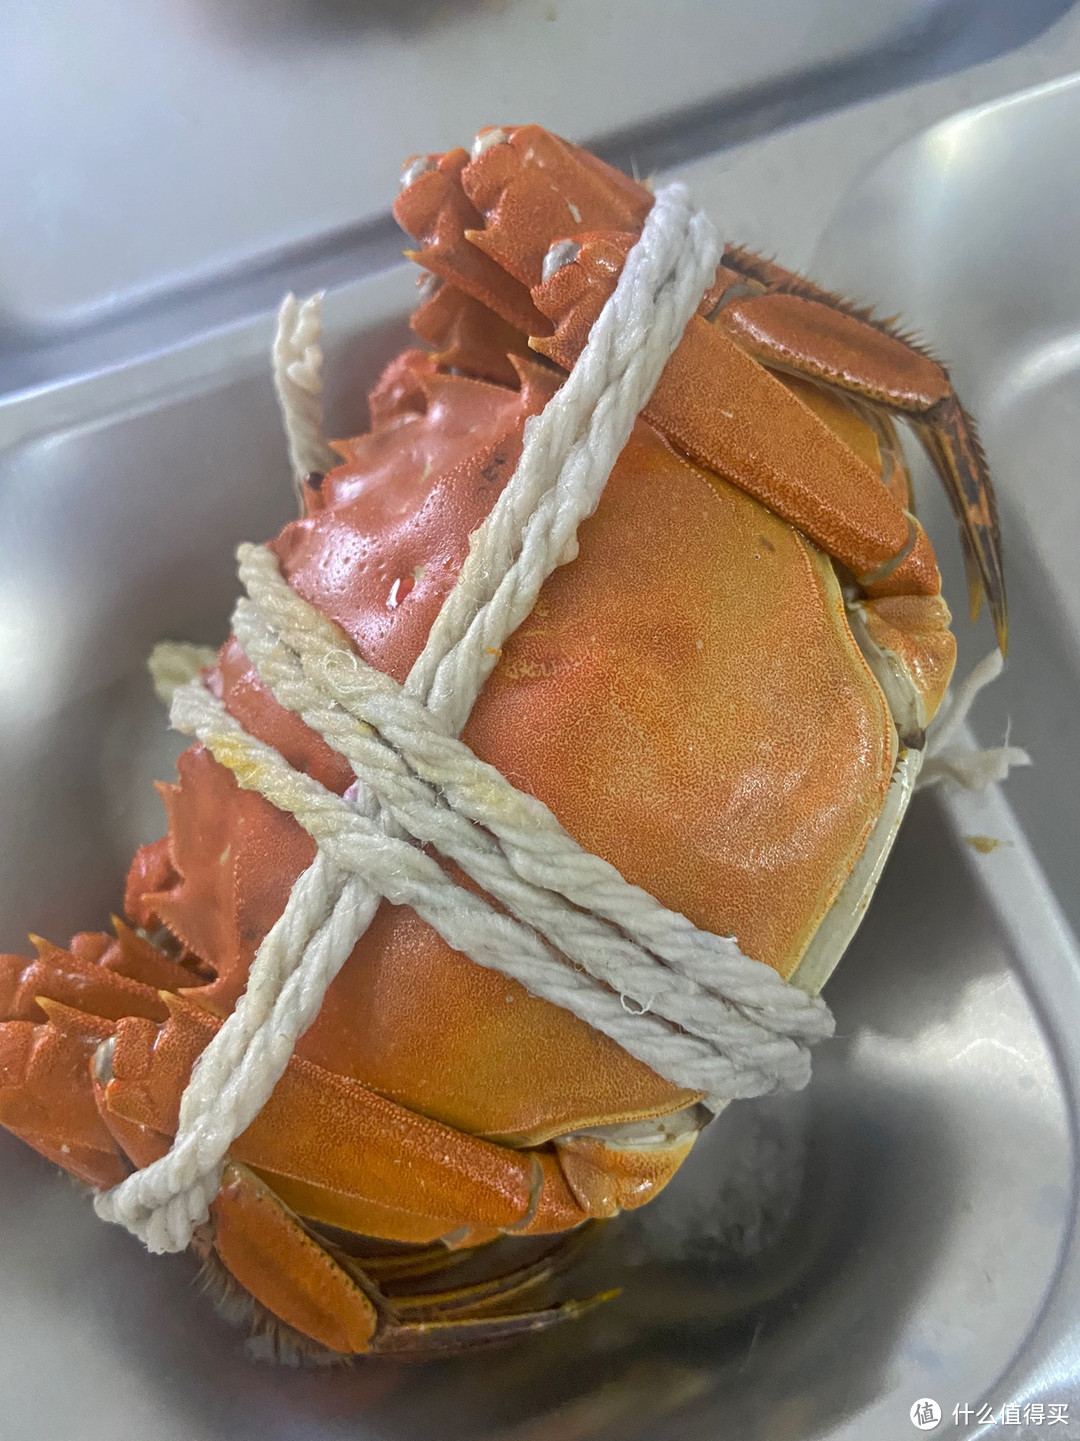 作为江南地区的特色美食之一，大闸蟹除了口感鲜美之外，还具有丰富的营养价值和健康功效。